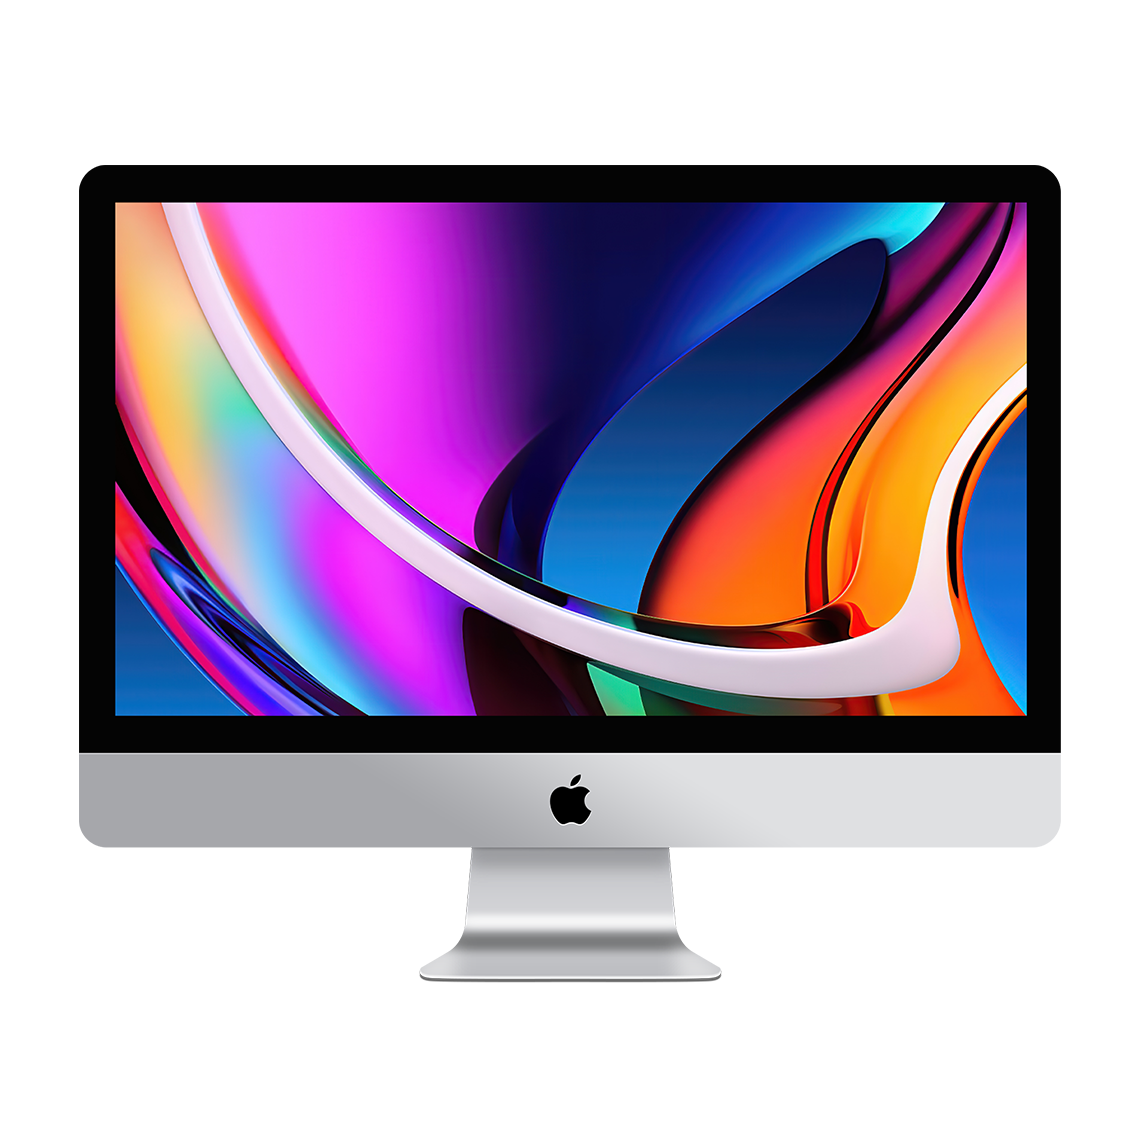 2020 iMac 27-inch 5K - Intel Core i9, 32GB, 512GB Flash, Radeon Pro 5500XT 8GB, Grade A